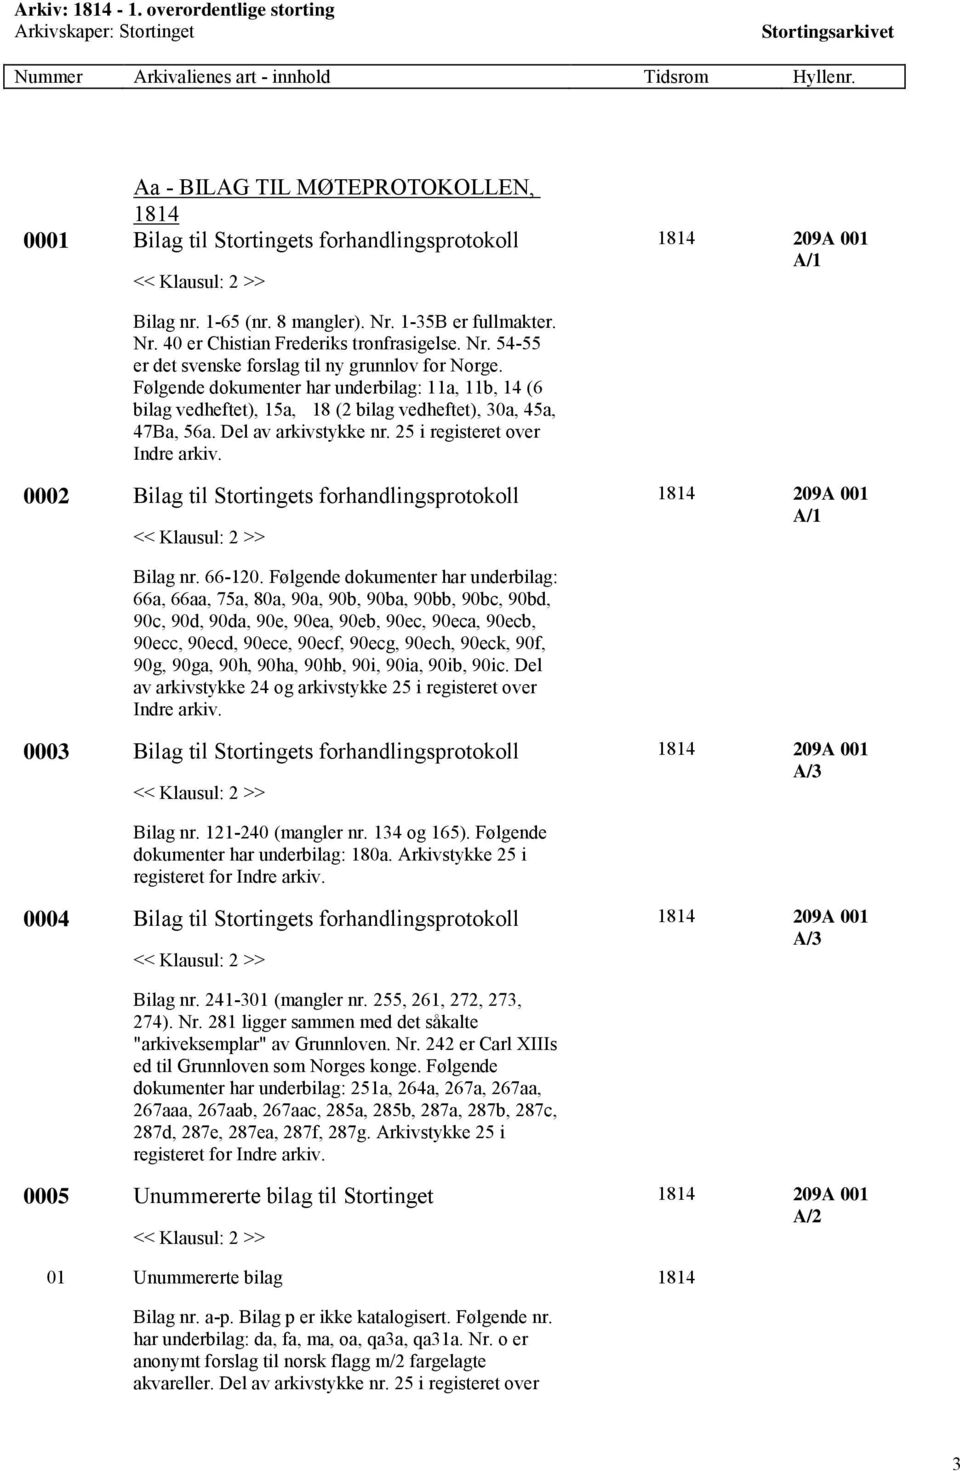 Nr. 54-55 er det svenske forslag til ny grunnlov for Norge. Følgende dokumenter har underbilag: 11a, 11b, 14 (6 bilag vedheftet), 15a, 18 (2 bilag vedheftet), 30a, 45a, 47Ba, 56a.